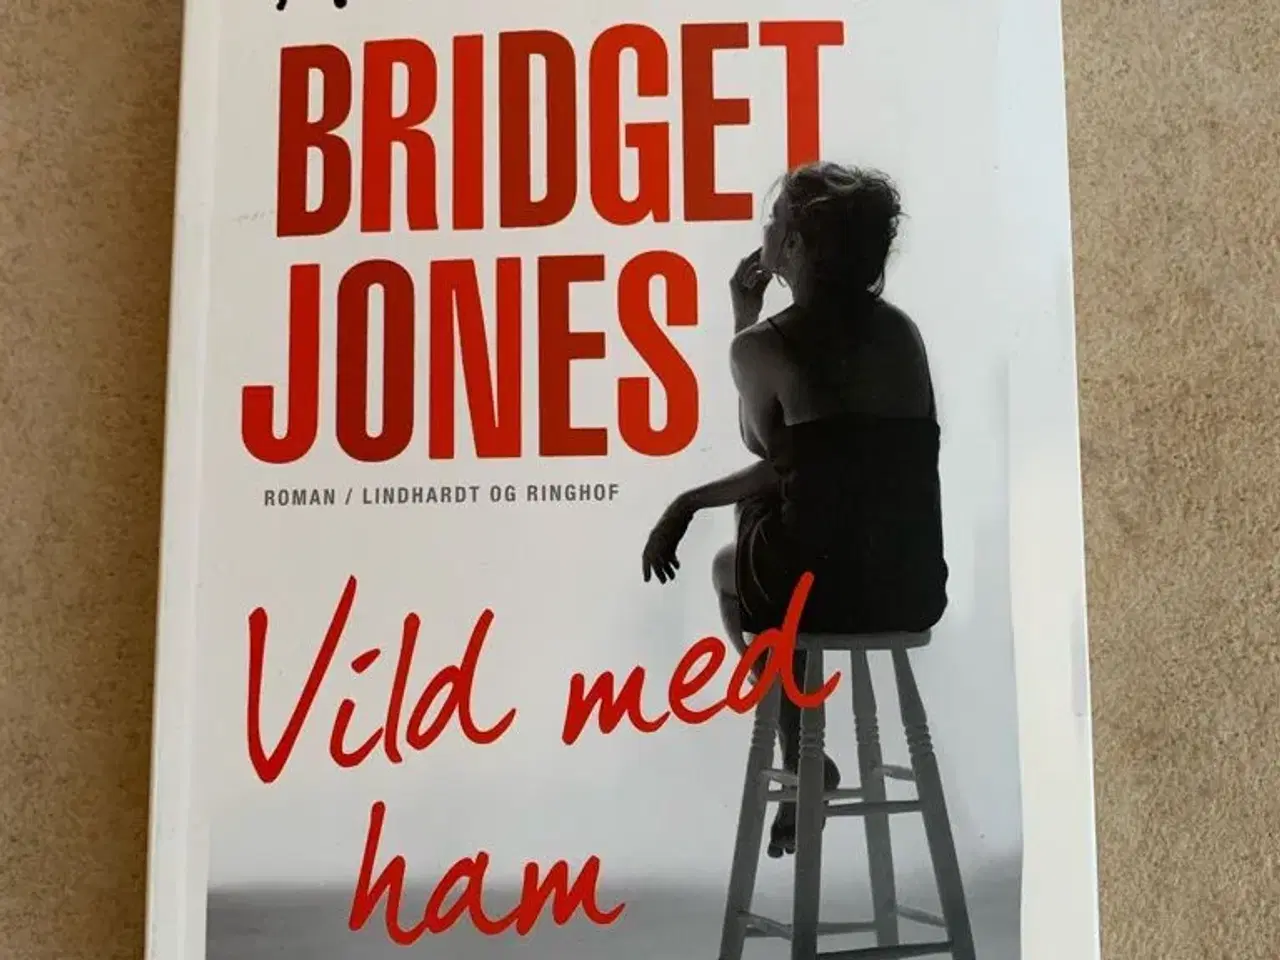 Billede 1 - BRIDGET JONES vild med ham bog